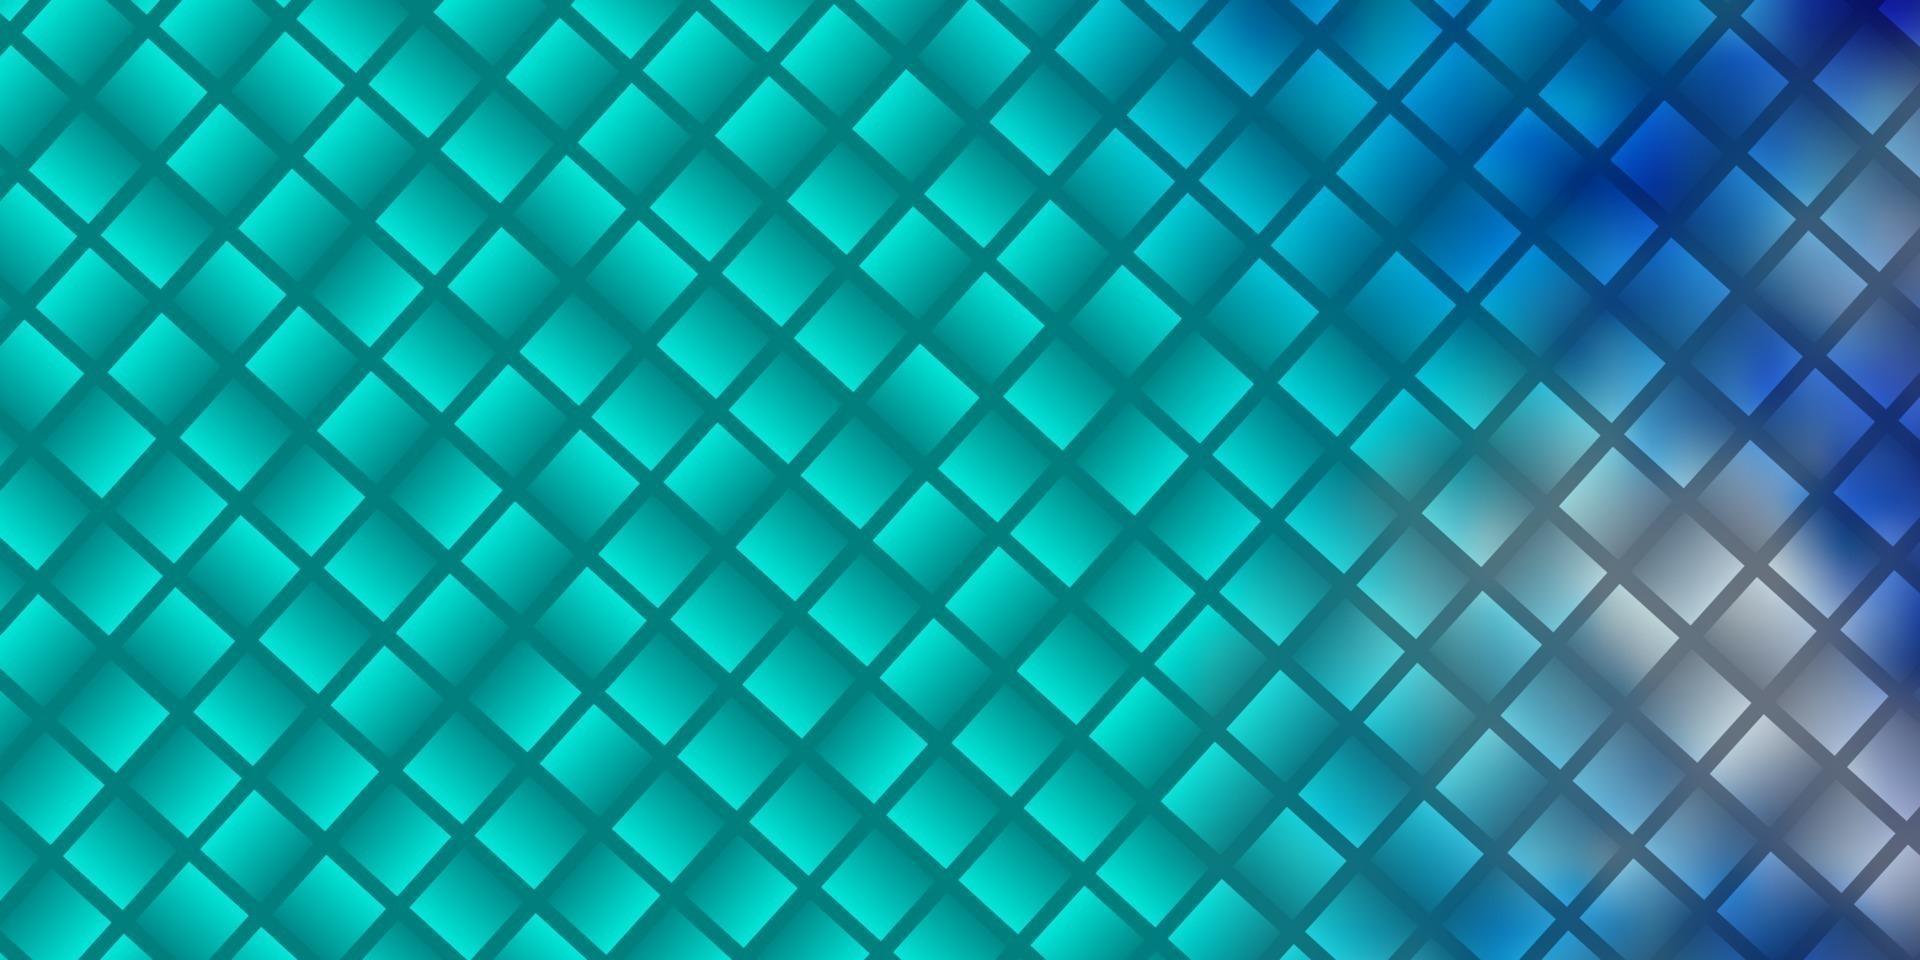 patrón de vector rosa claro, azul en estilo cuadrado.